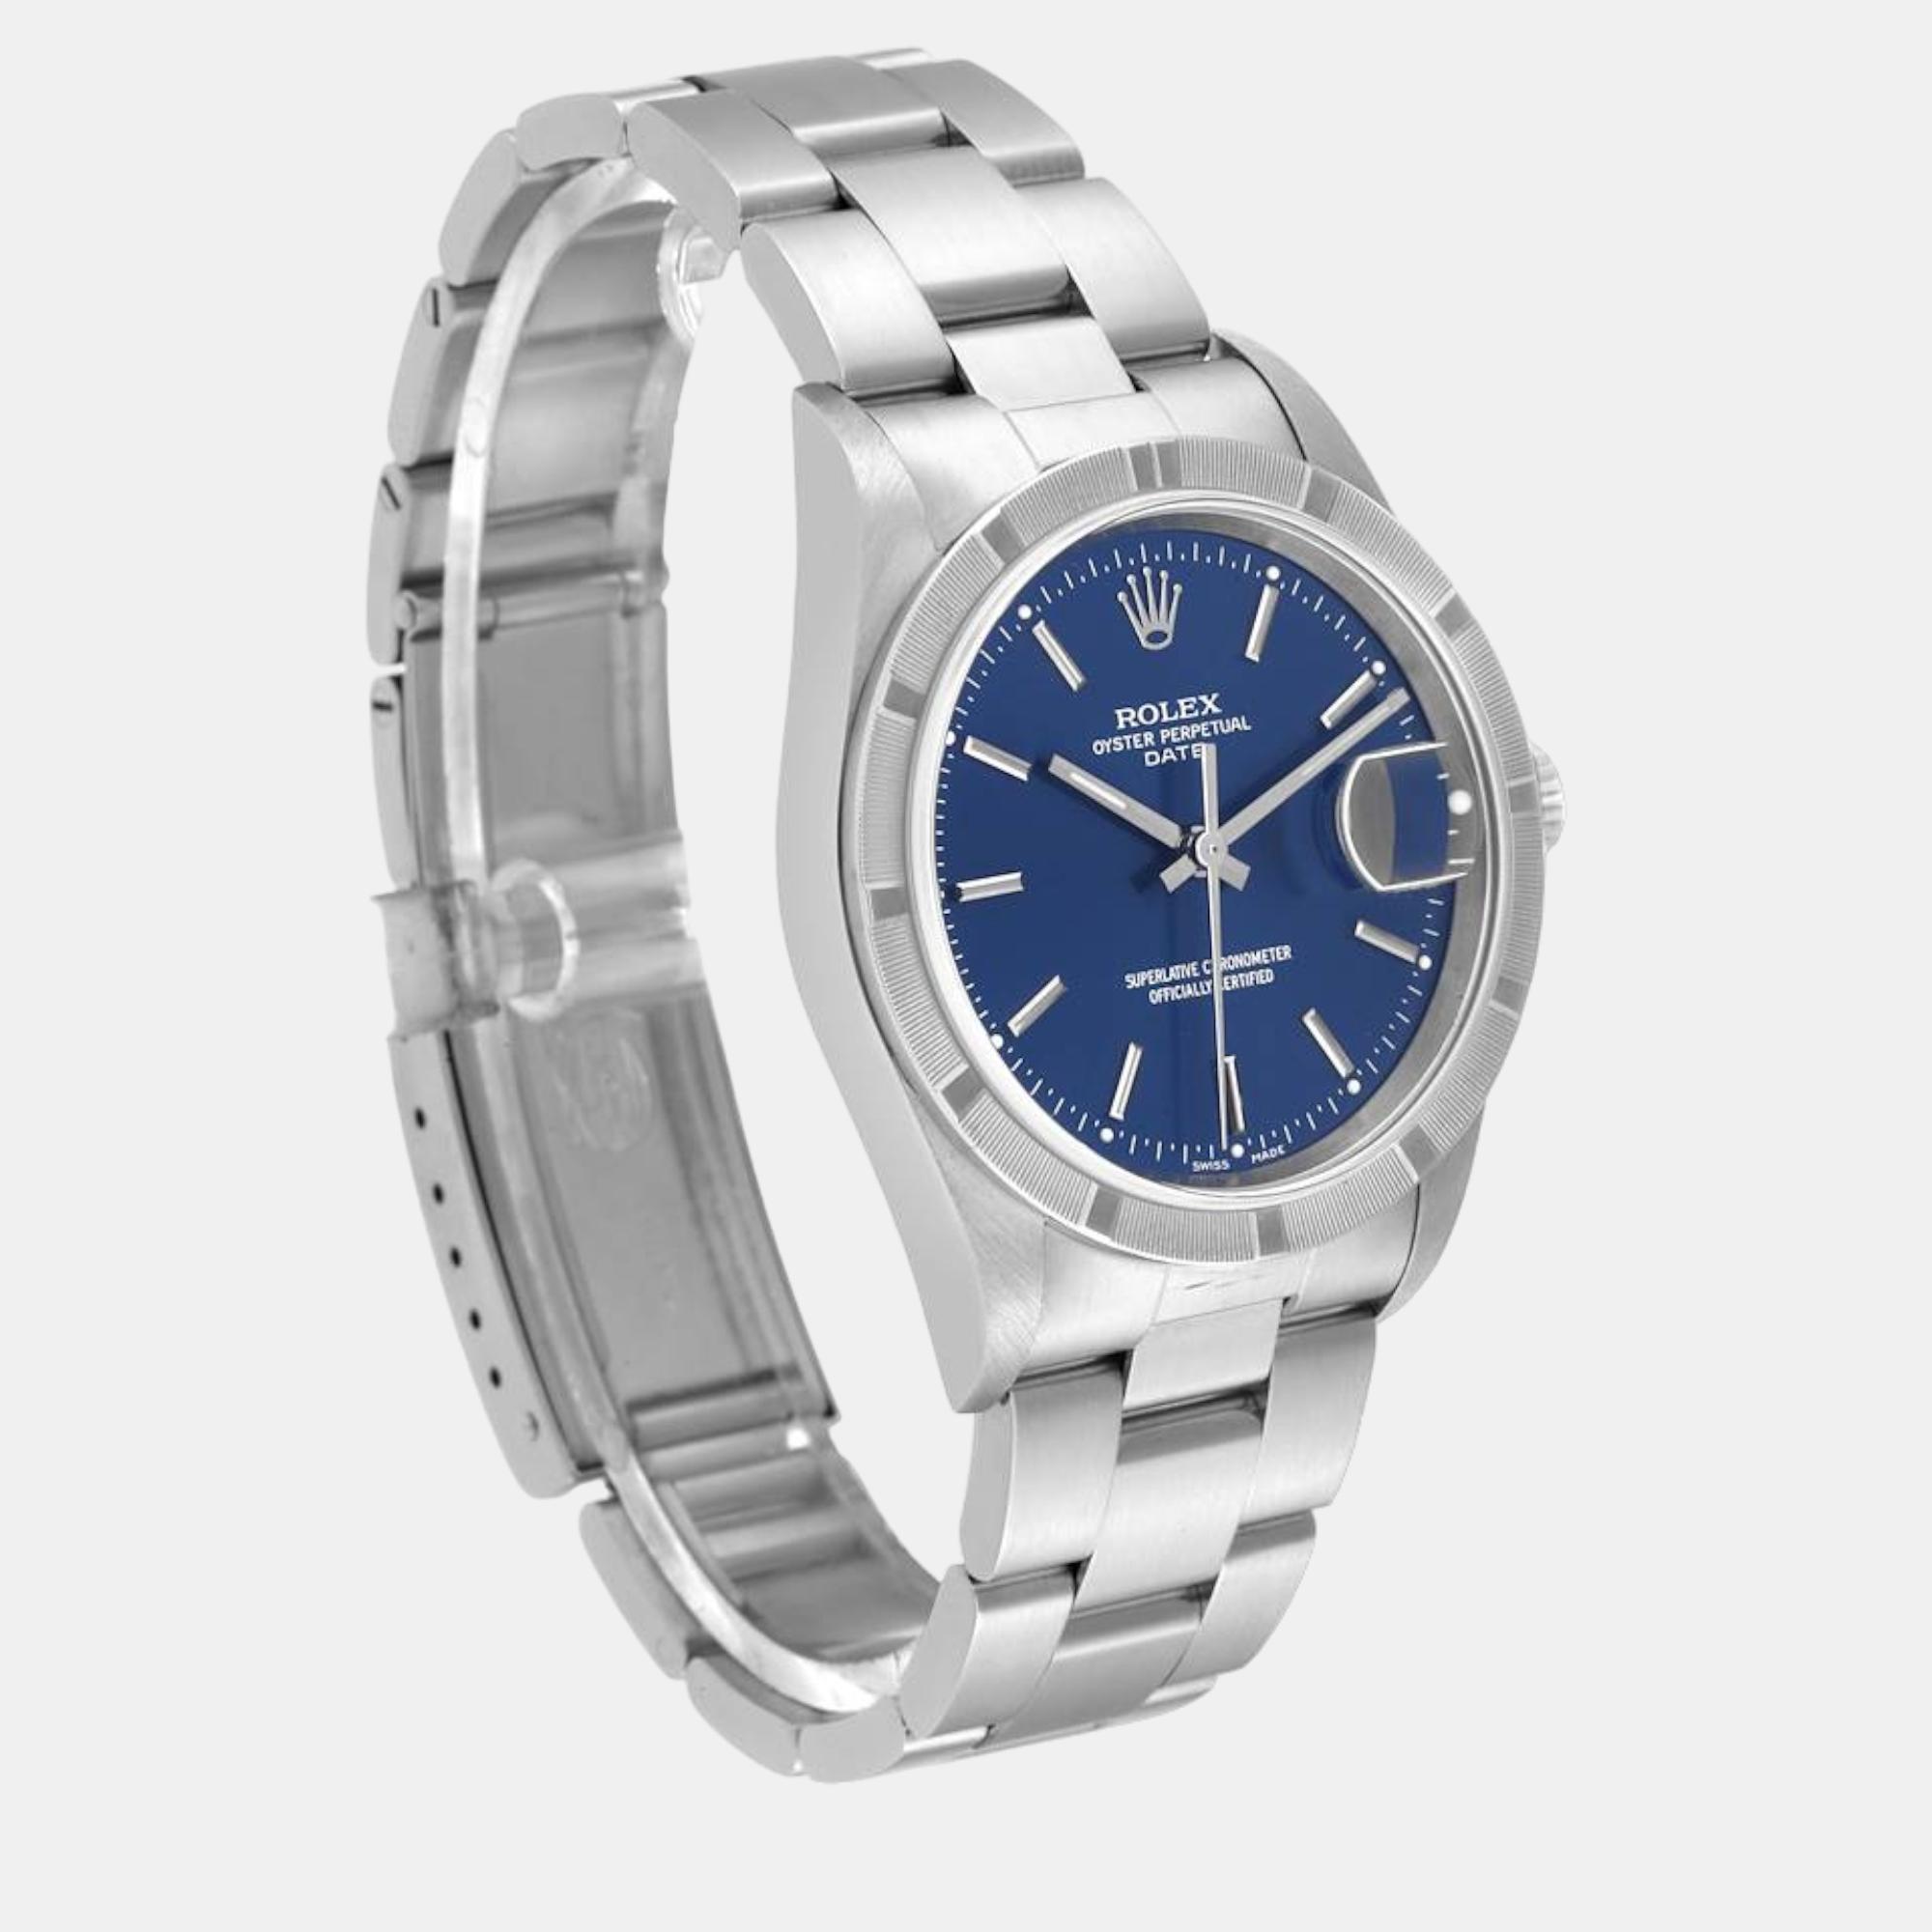 Rolex Date Blue Dial Engine Turned Bezel Steel Men's Watch 15210 34 Mm